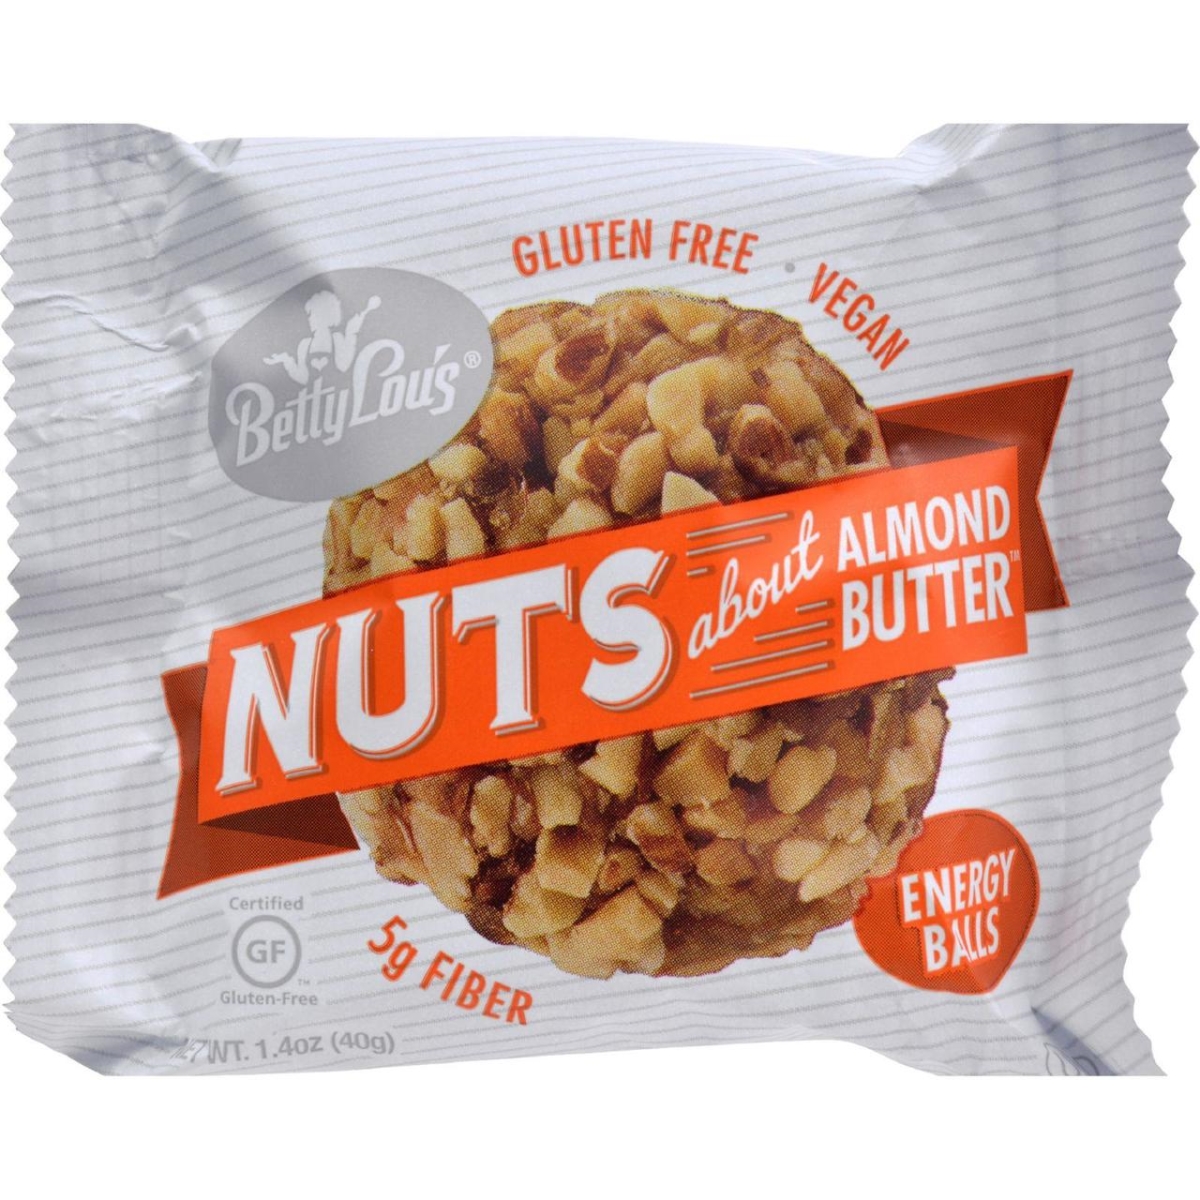 Hg1540483 1.4 Oz Nut Butter Balls - Almond Butter, 40 Count